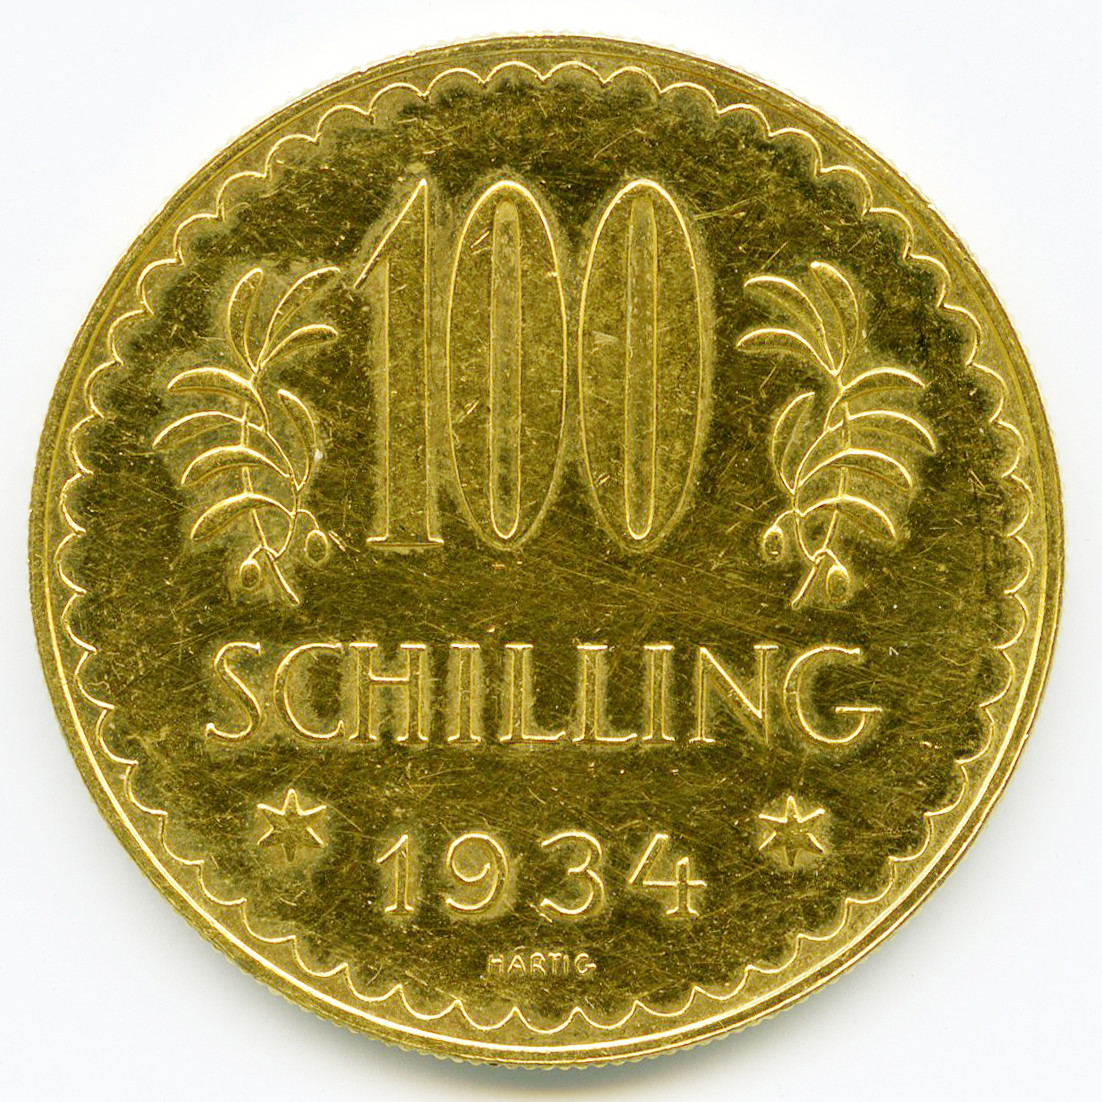 Autriche - 100 Schilling - 1934 revers